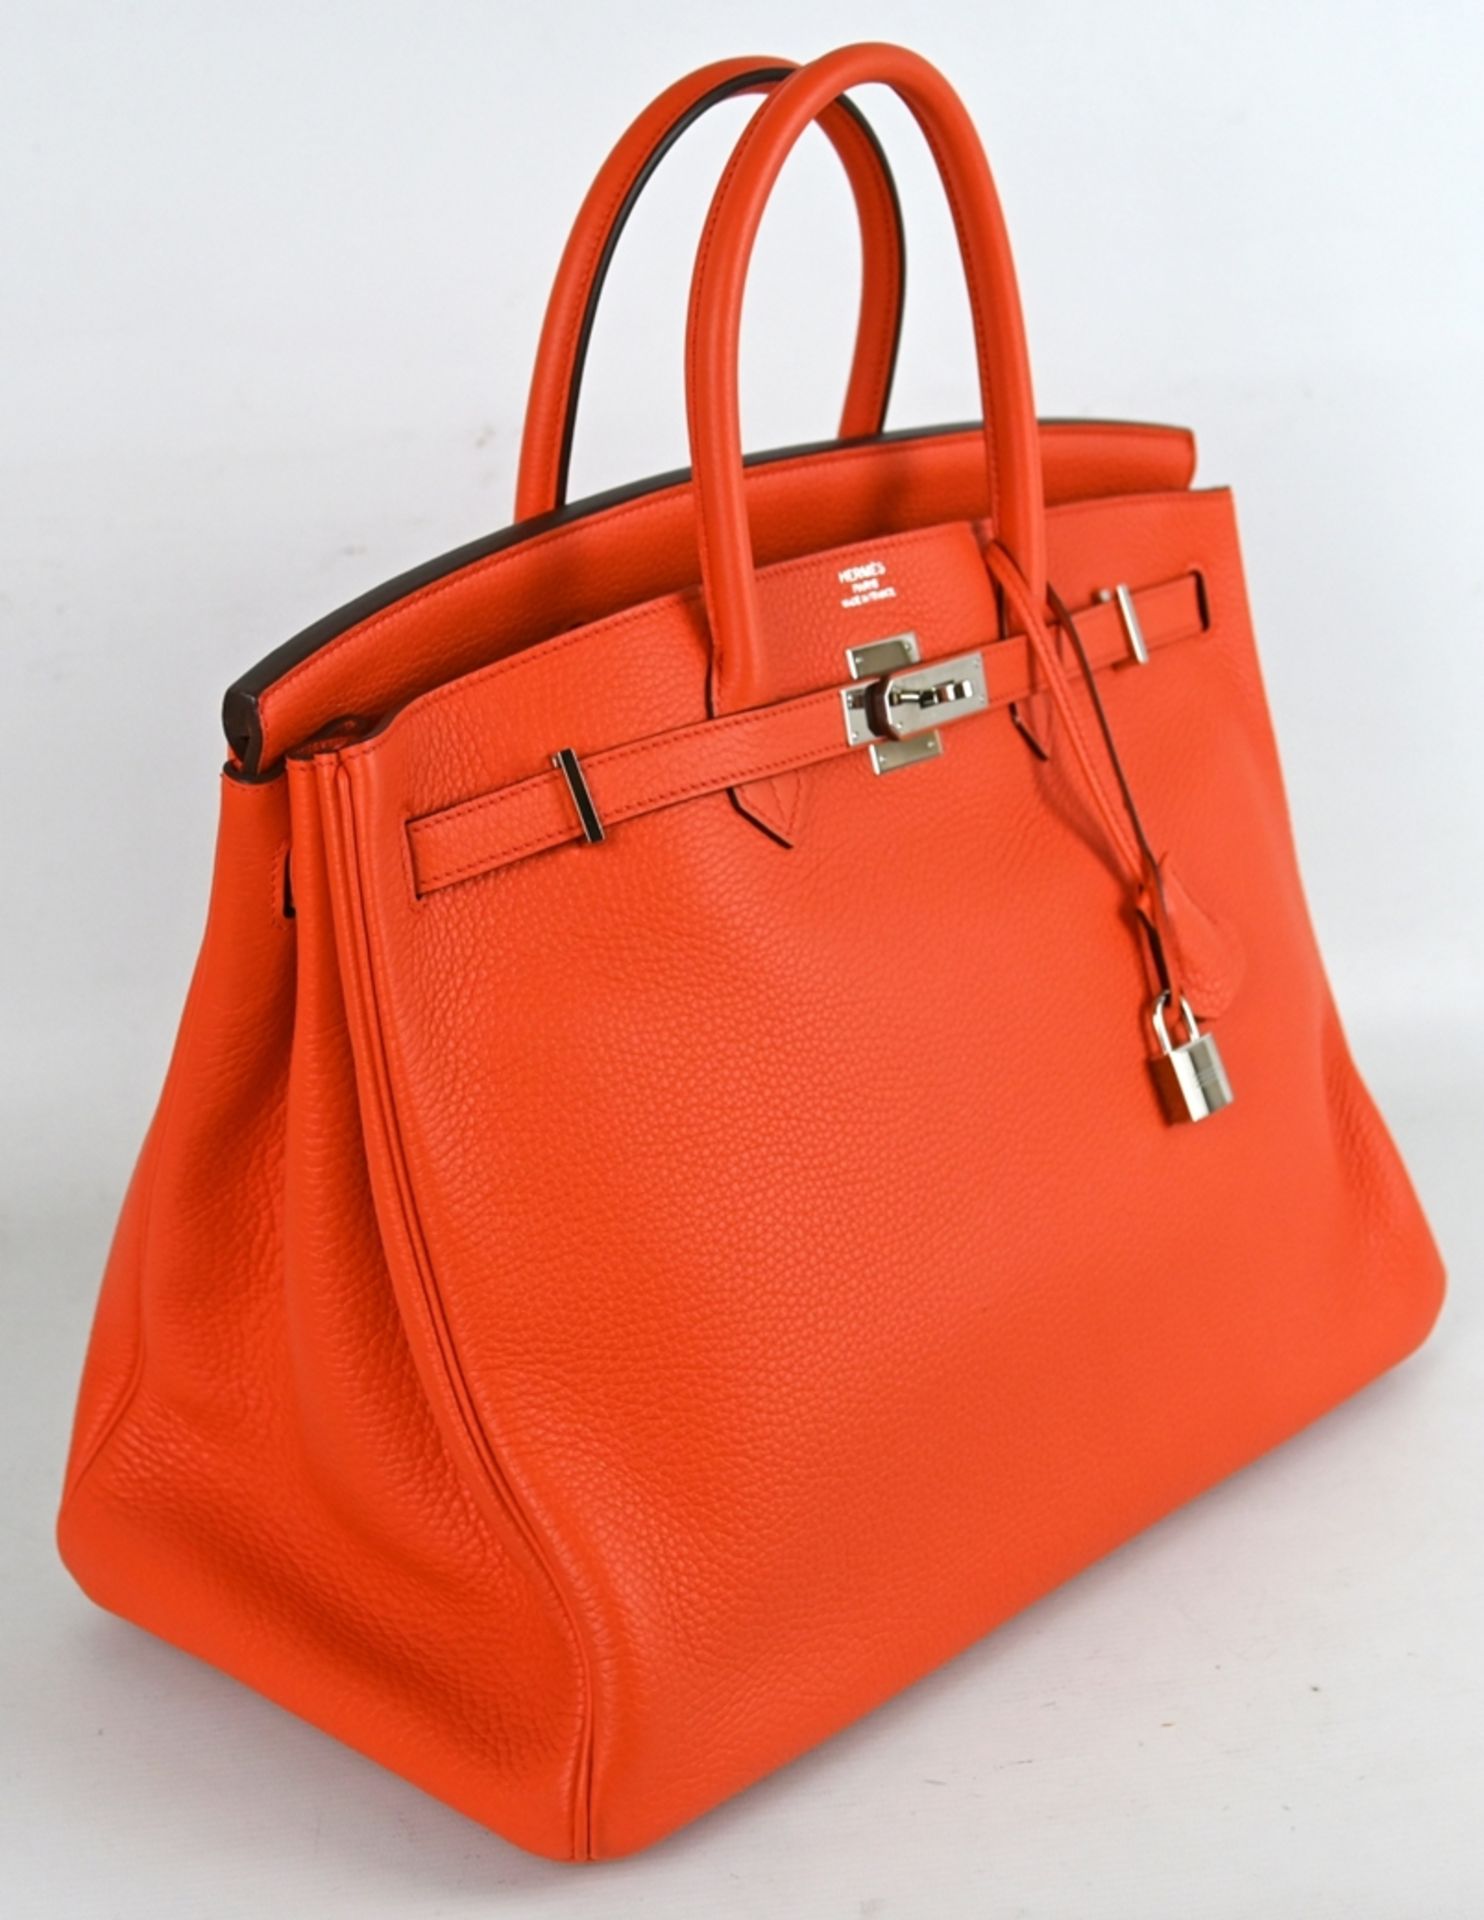 HANDTASCHE HERMÈS Birkin Bag 40, Poppy Orange, klassische Lederhandtasche mit Lederinnenfutter, zwe - Bild 3 aus 9